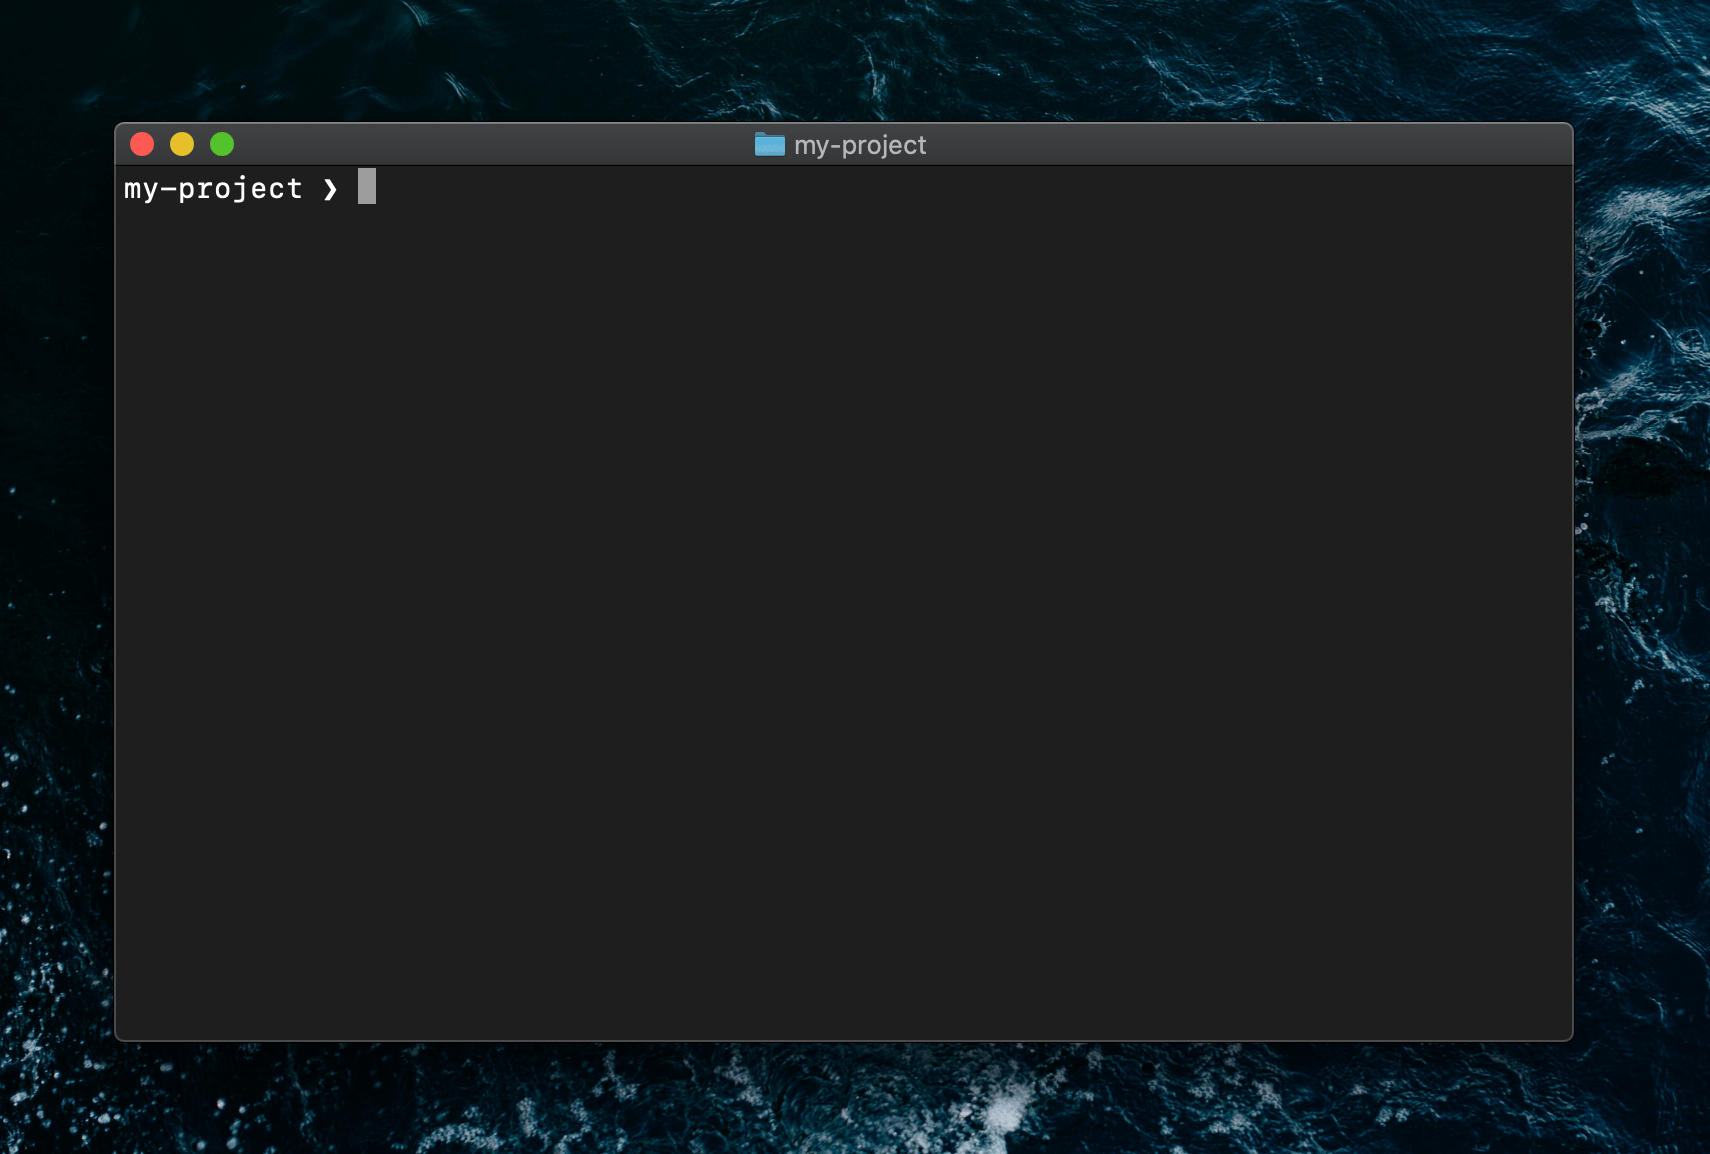 A minimalistic terminal prompt